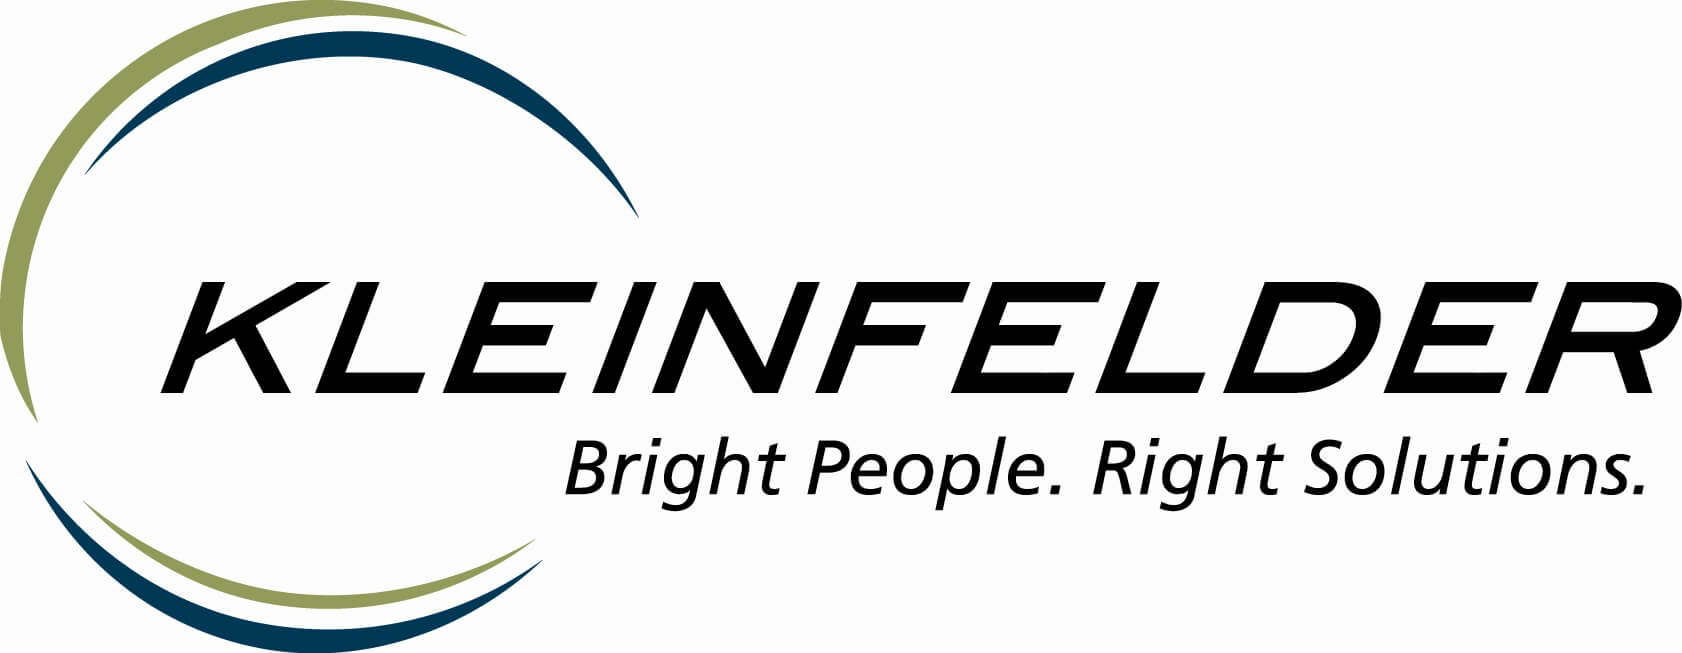 Kleinfelder-logo